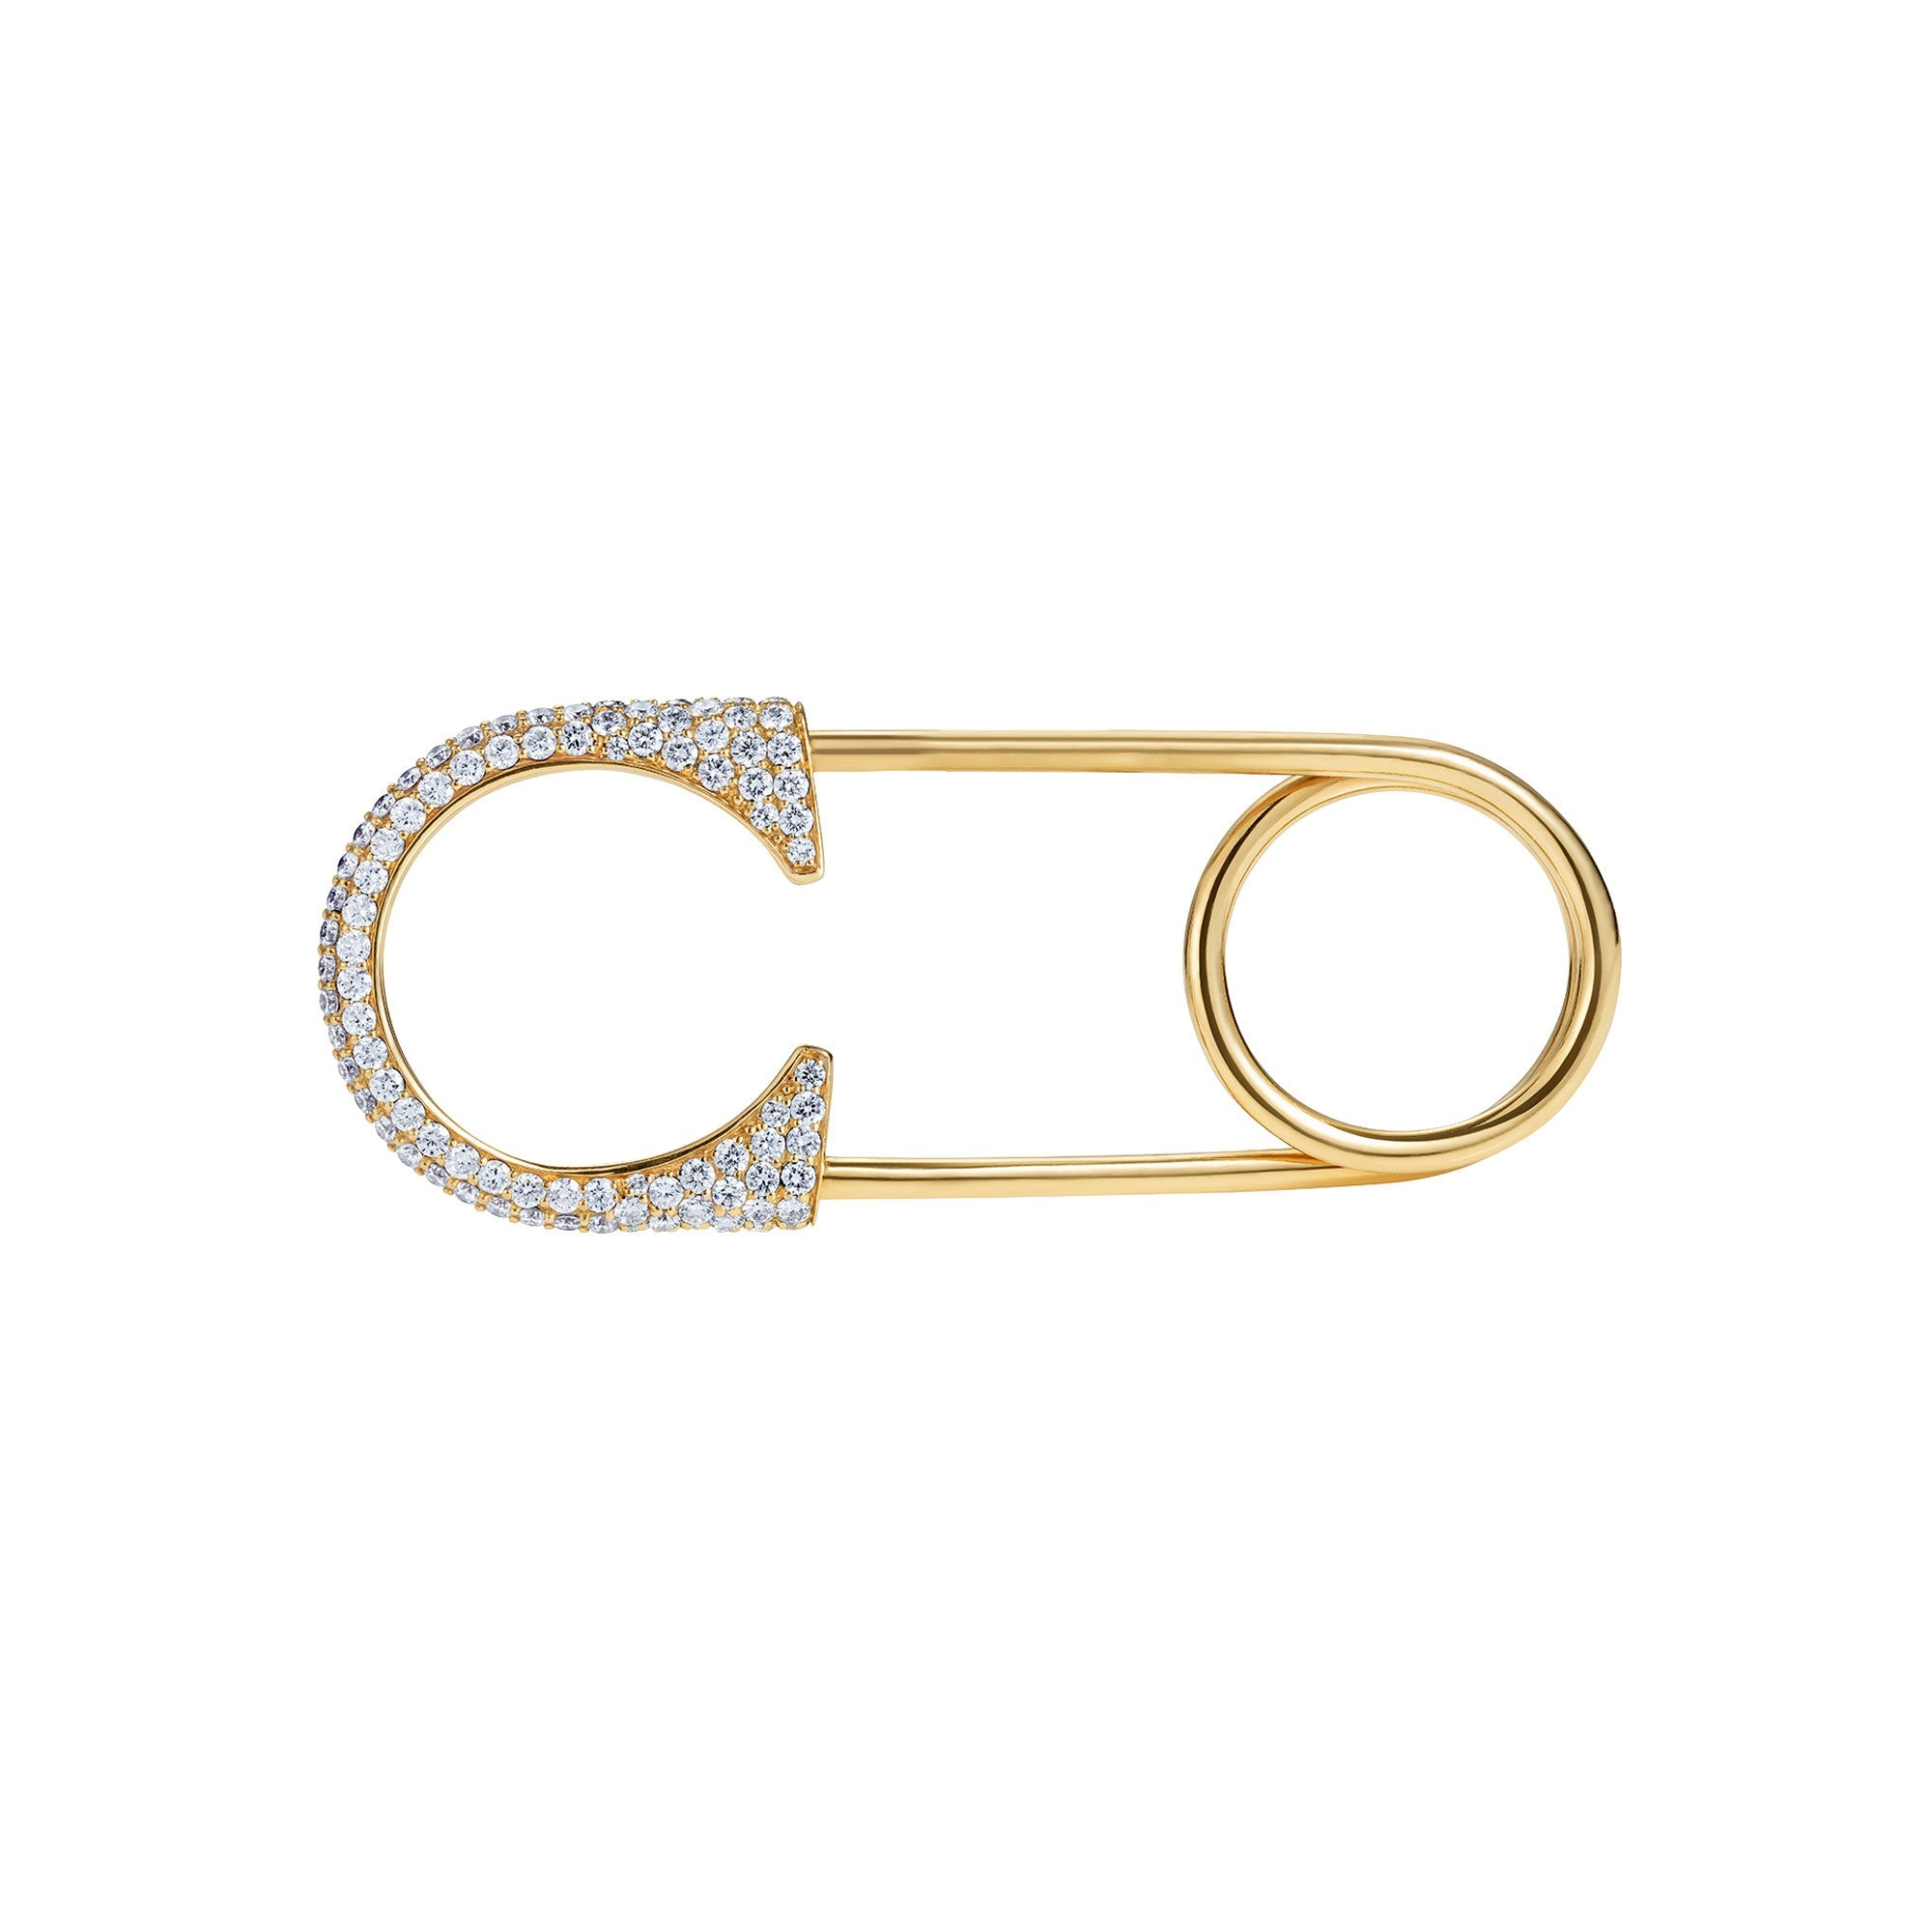 Diamond Safety Pin Ring